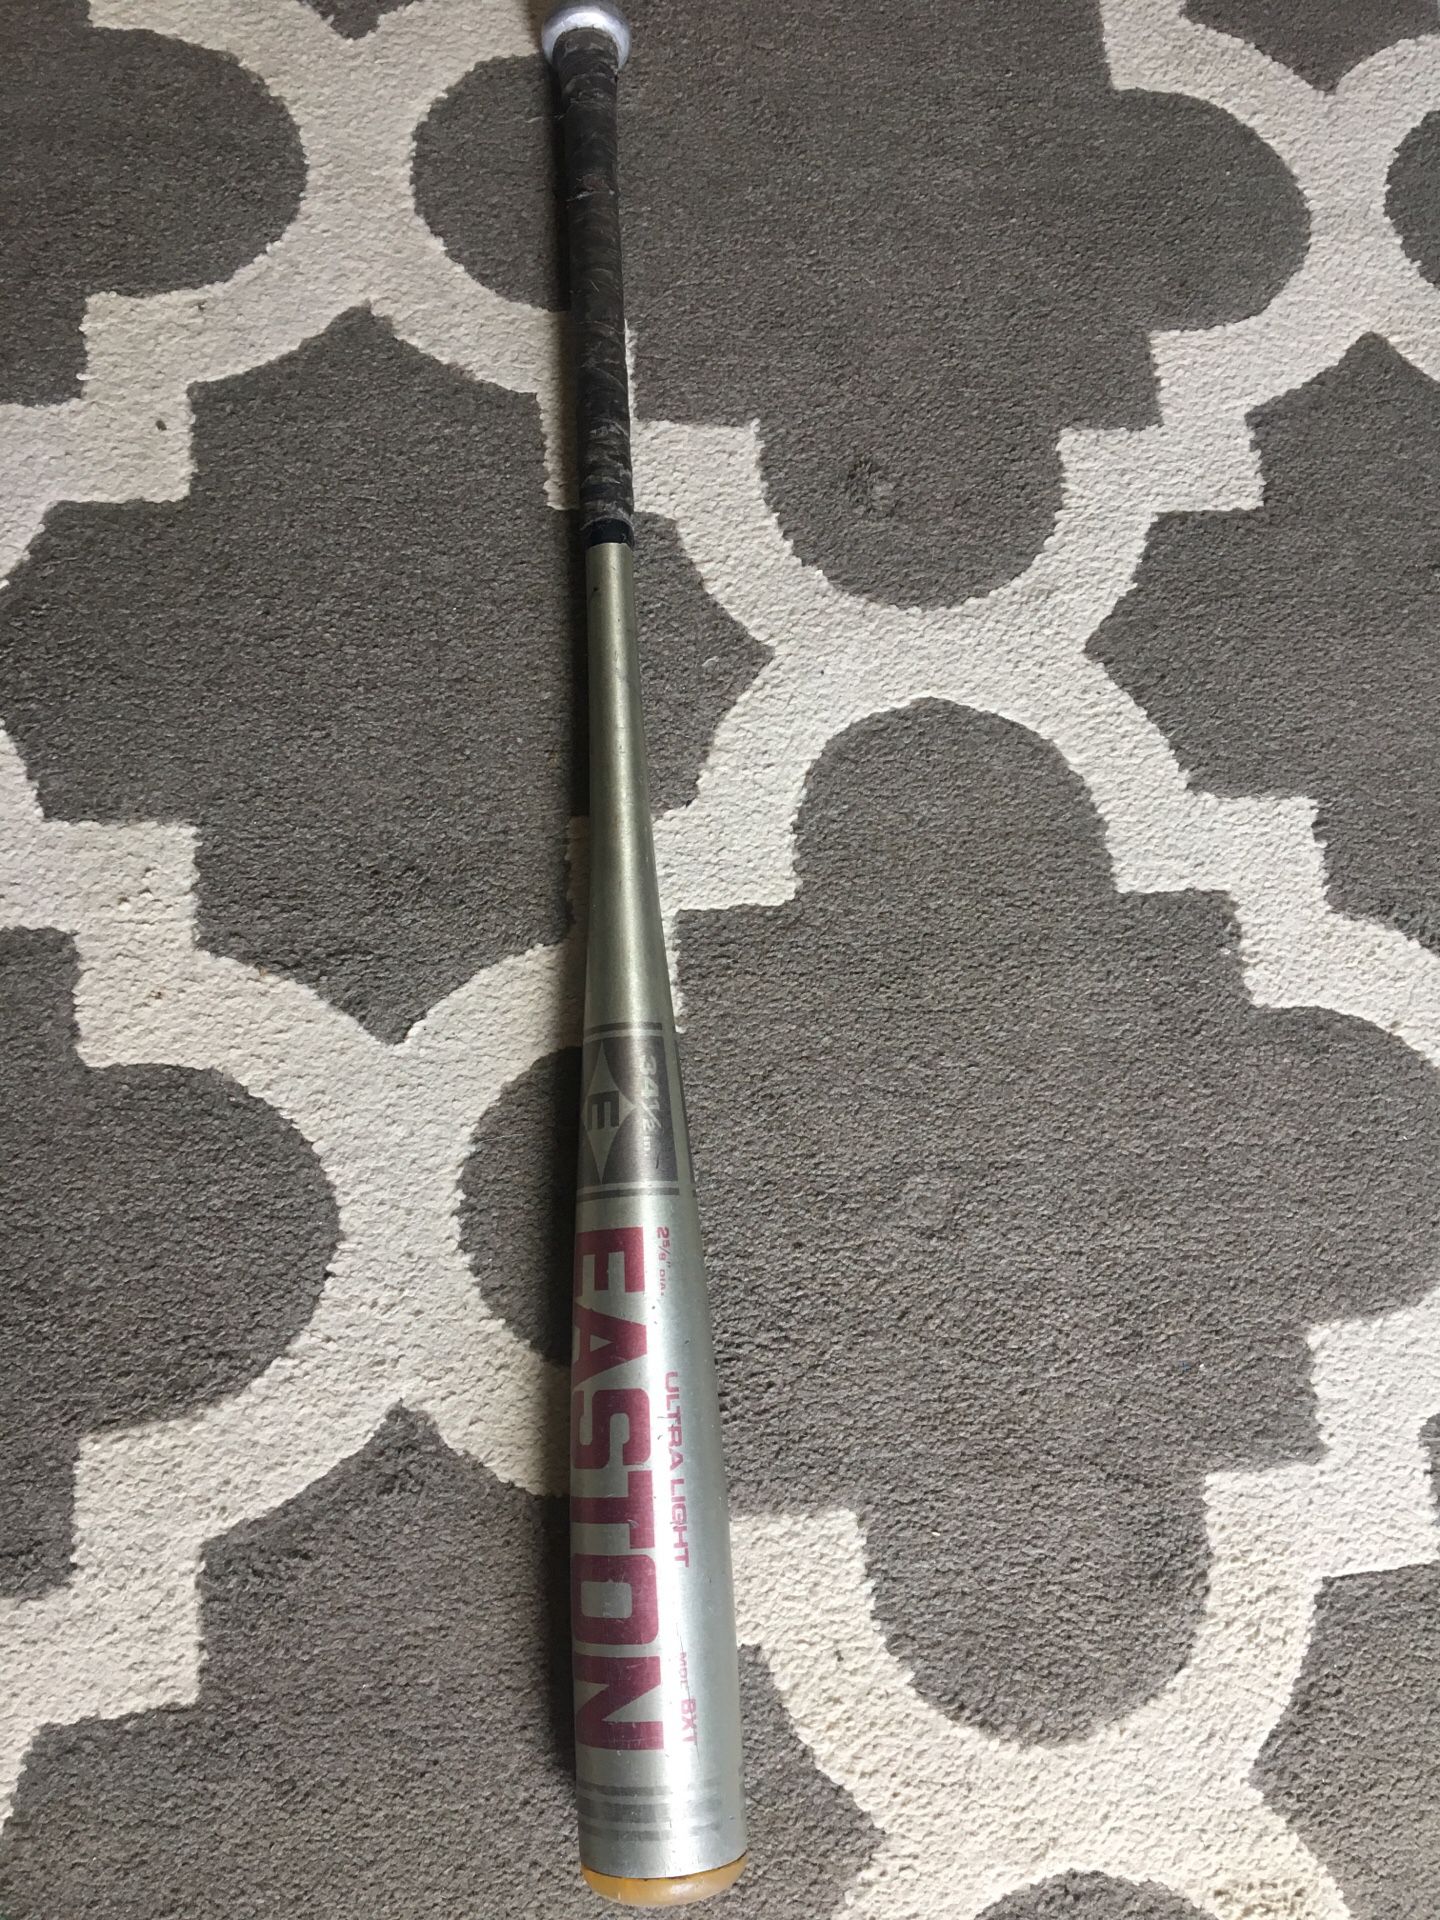 Easton old model ultra light baseball bat 34.5”,29.5oz